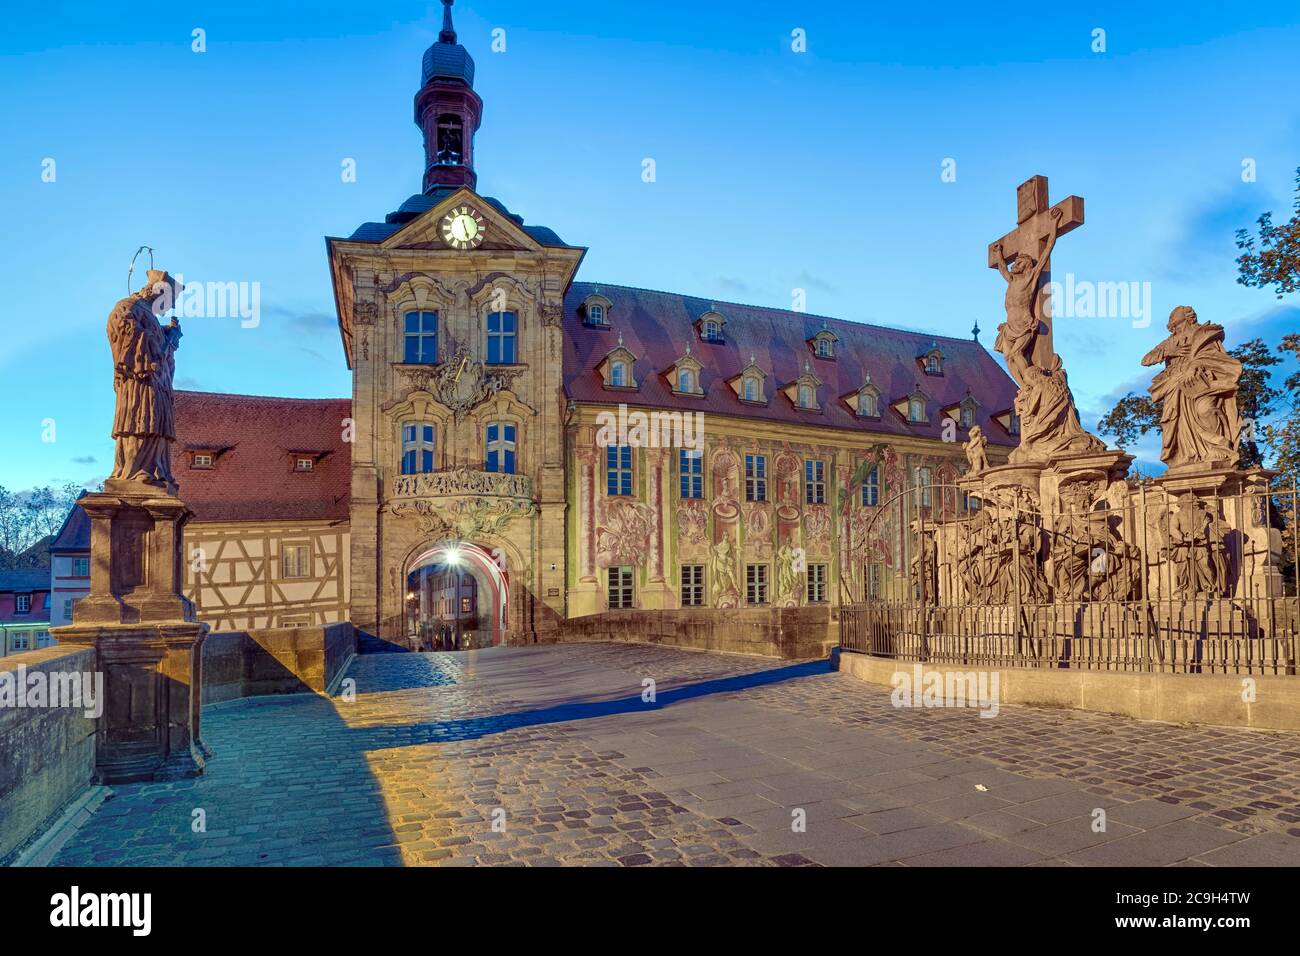 Storico municipio con ponte e statue, illuminato, Bamberga, Germania Foto Stock